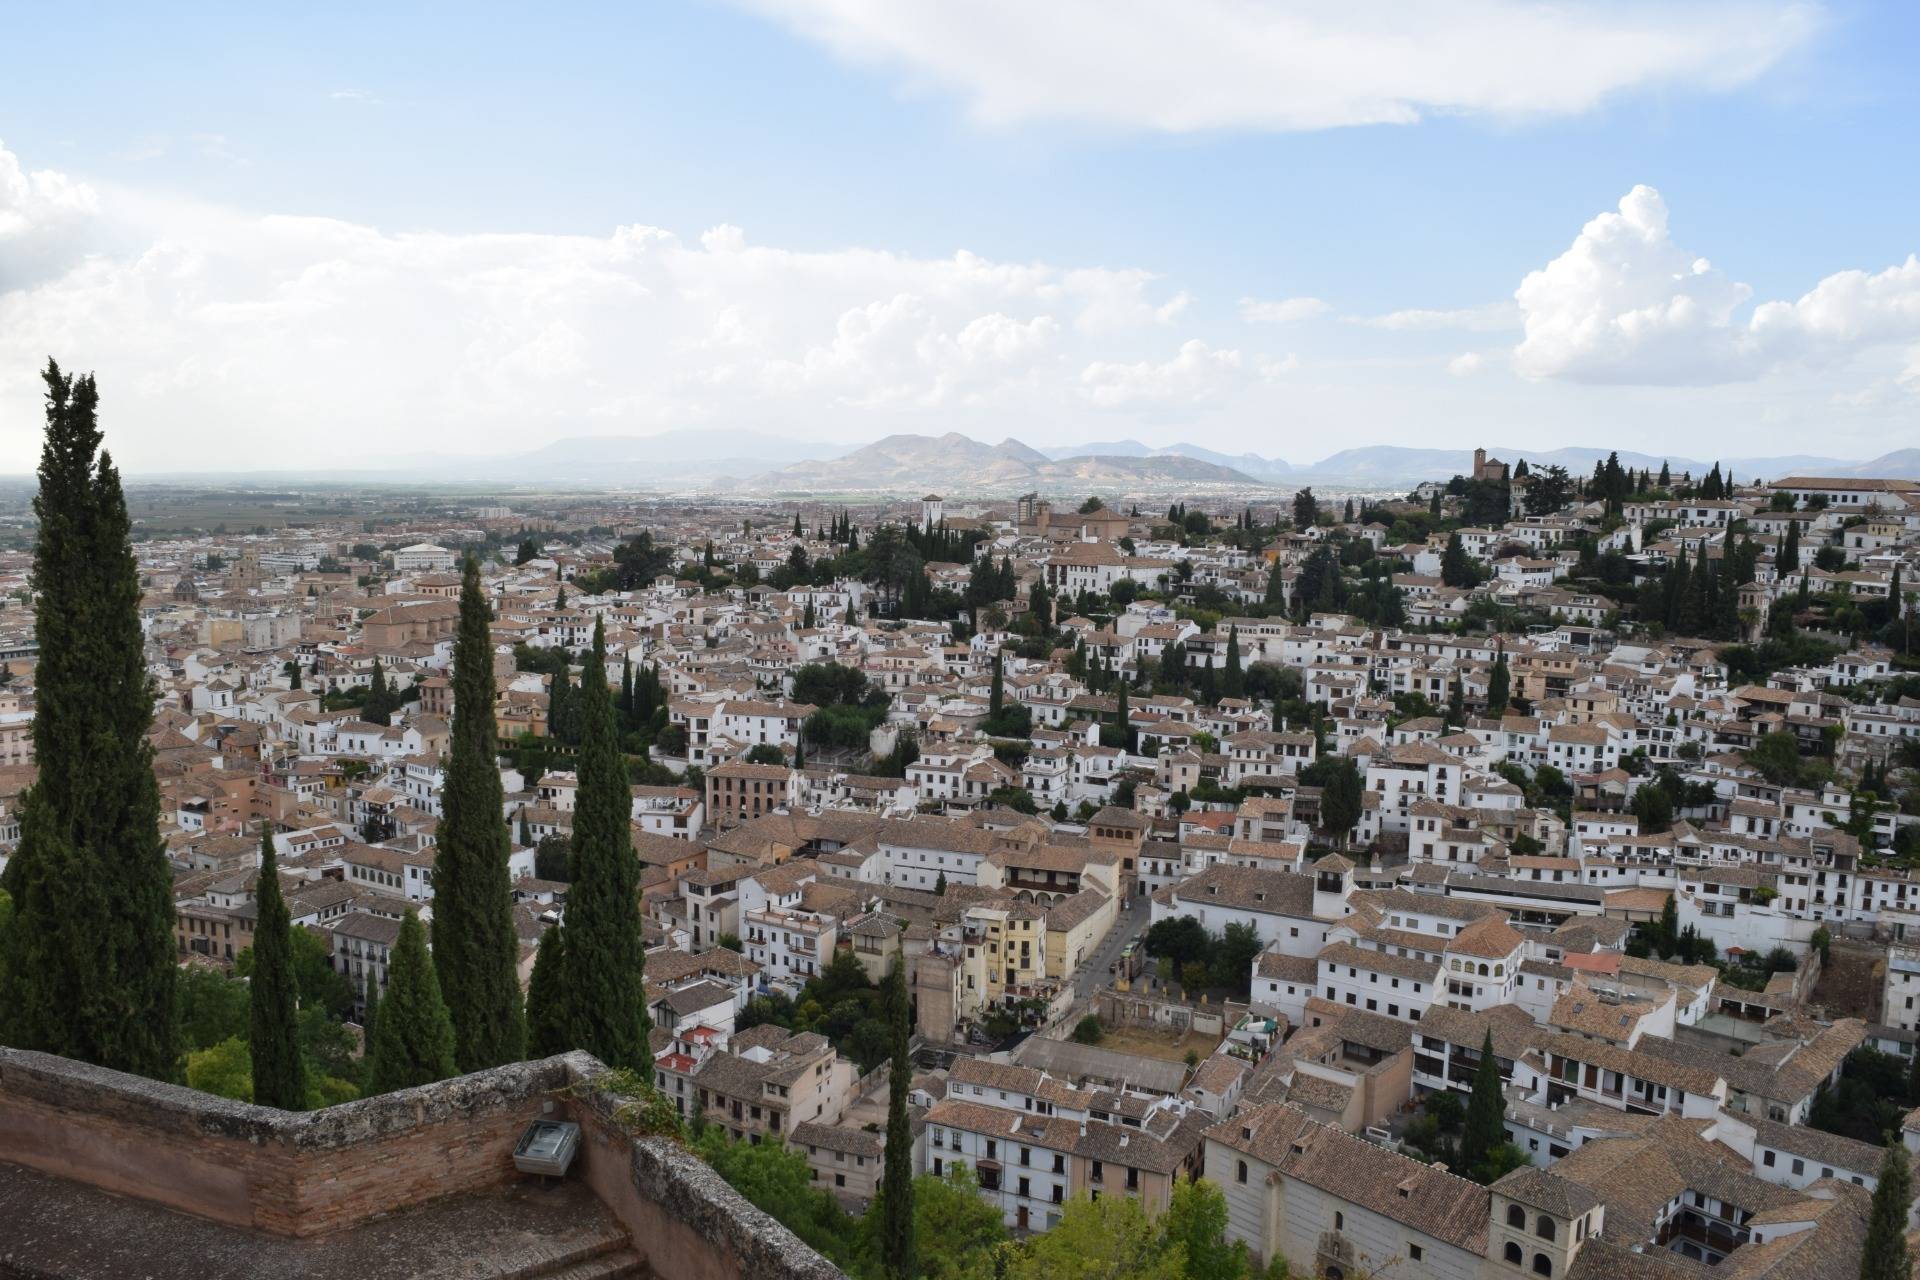  A view of Granada